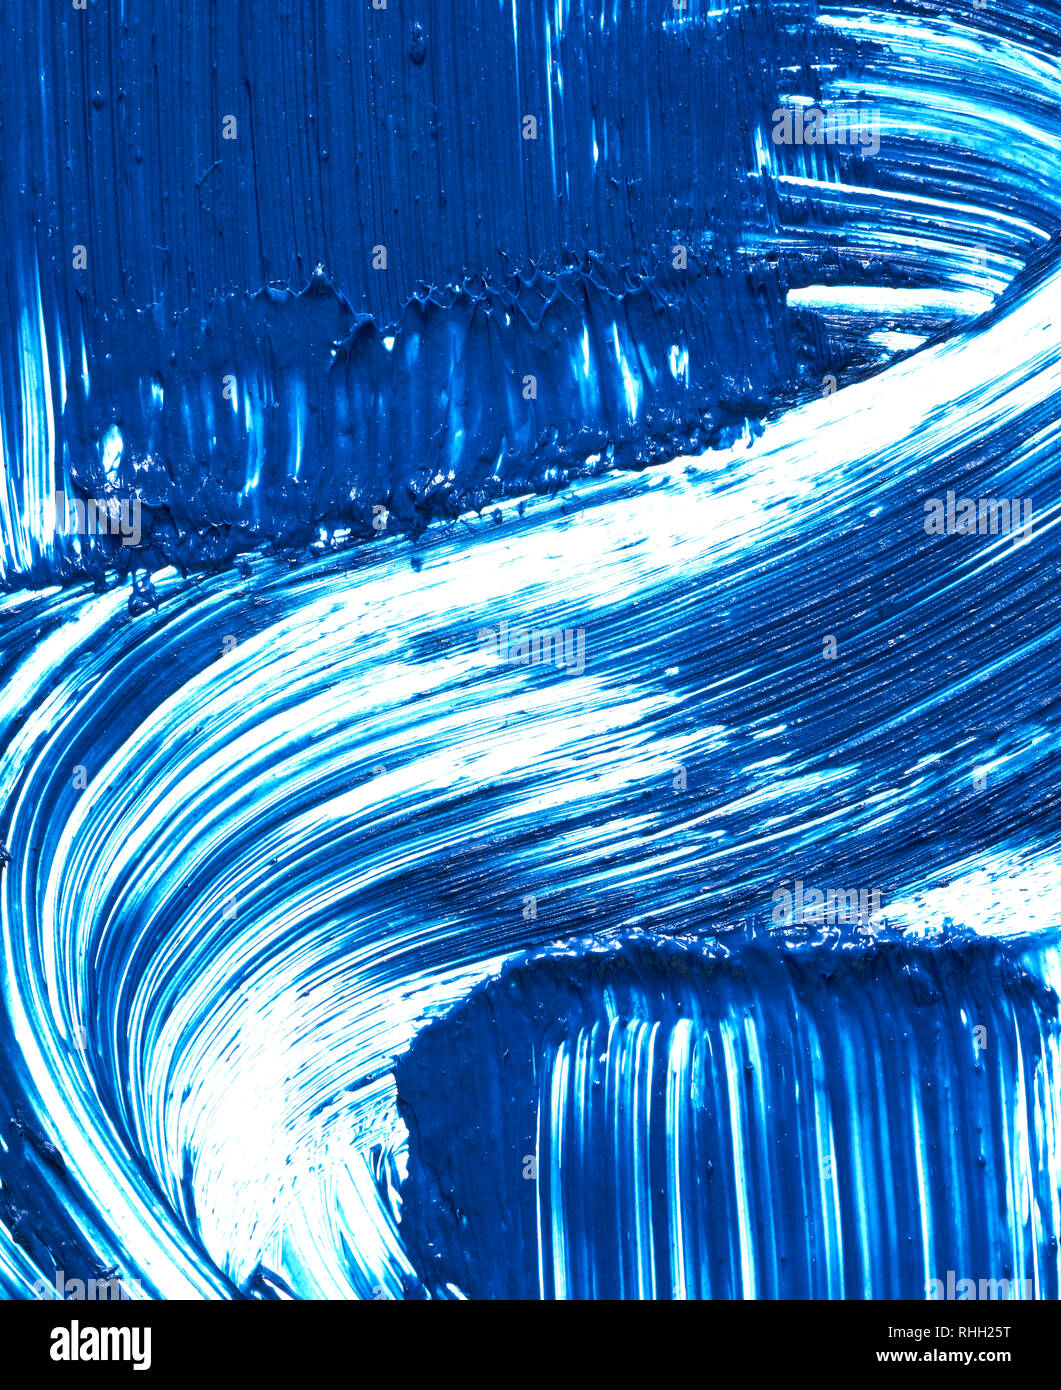 Texture of blue mascara for eyelashes isolated on white background. Smear of navy blue mascara for eyelashes on white background. Stock Photo